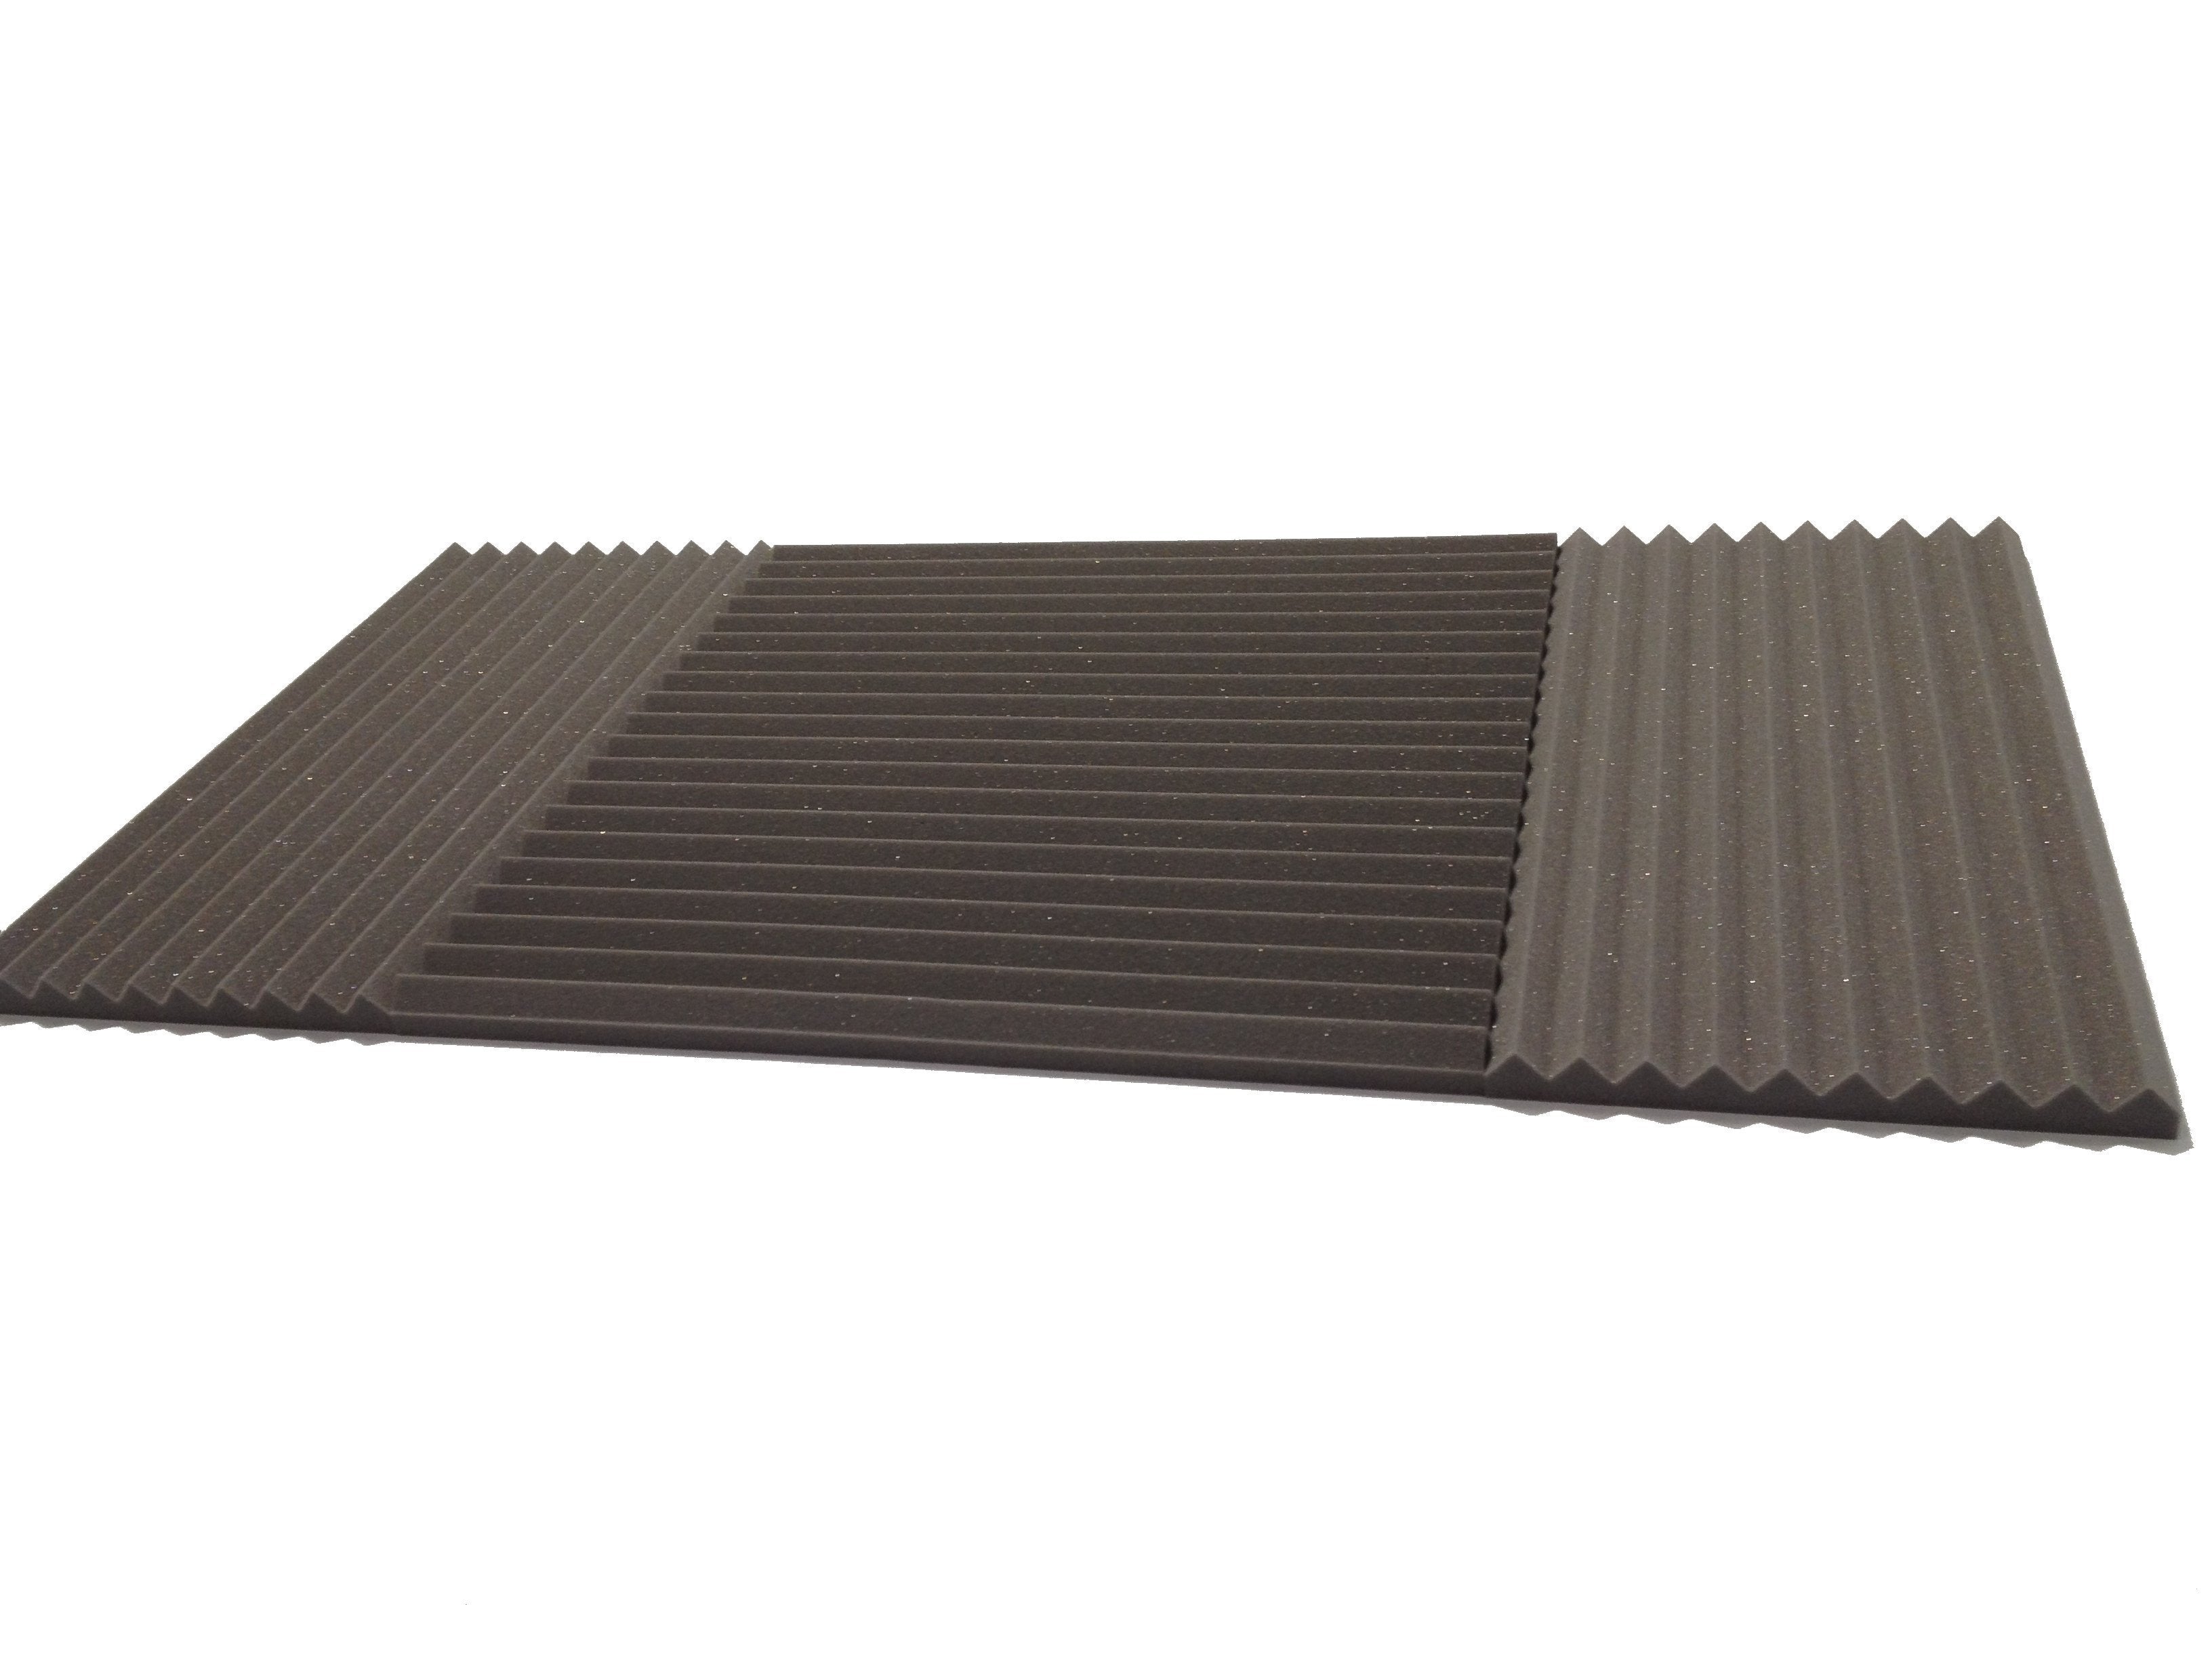 Wedge 30"x15" Acoustic Studio Foam Tile Pack - Advanced Acoustics